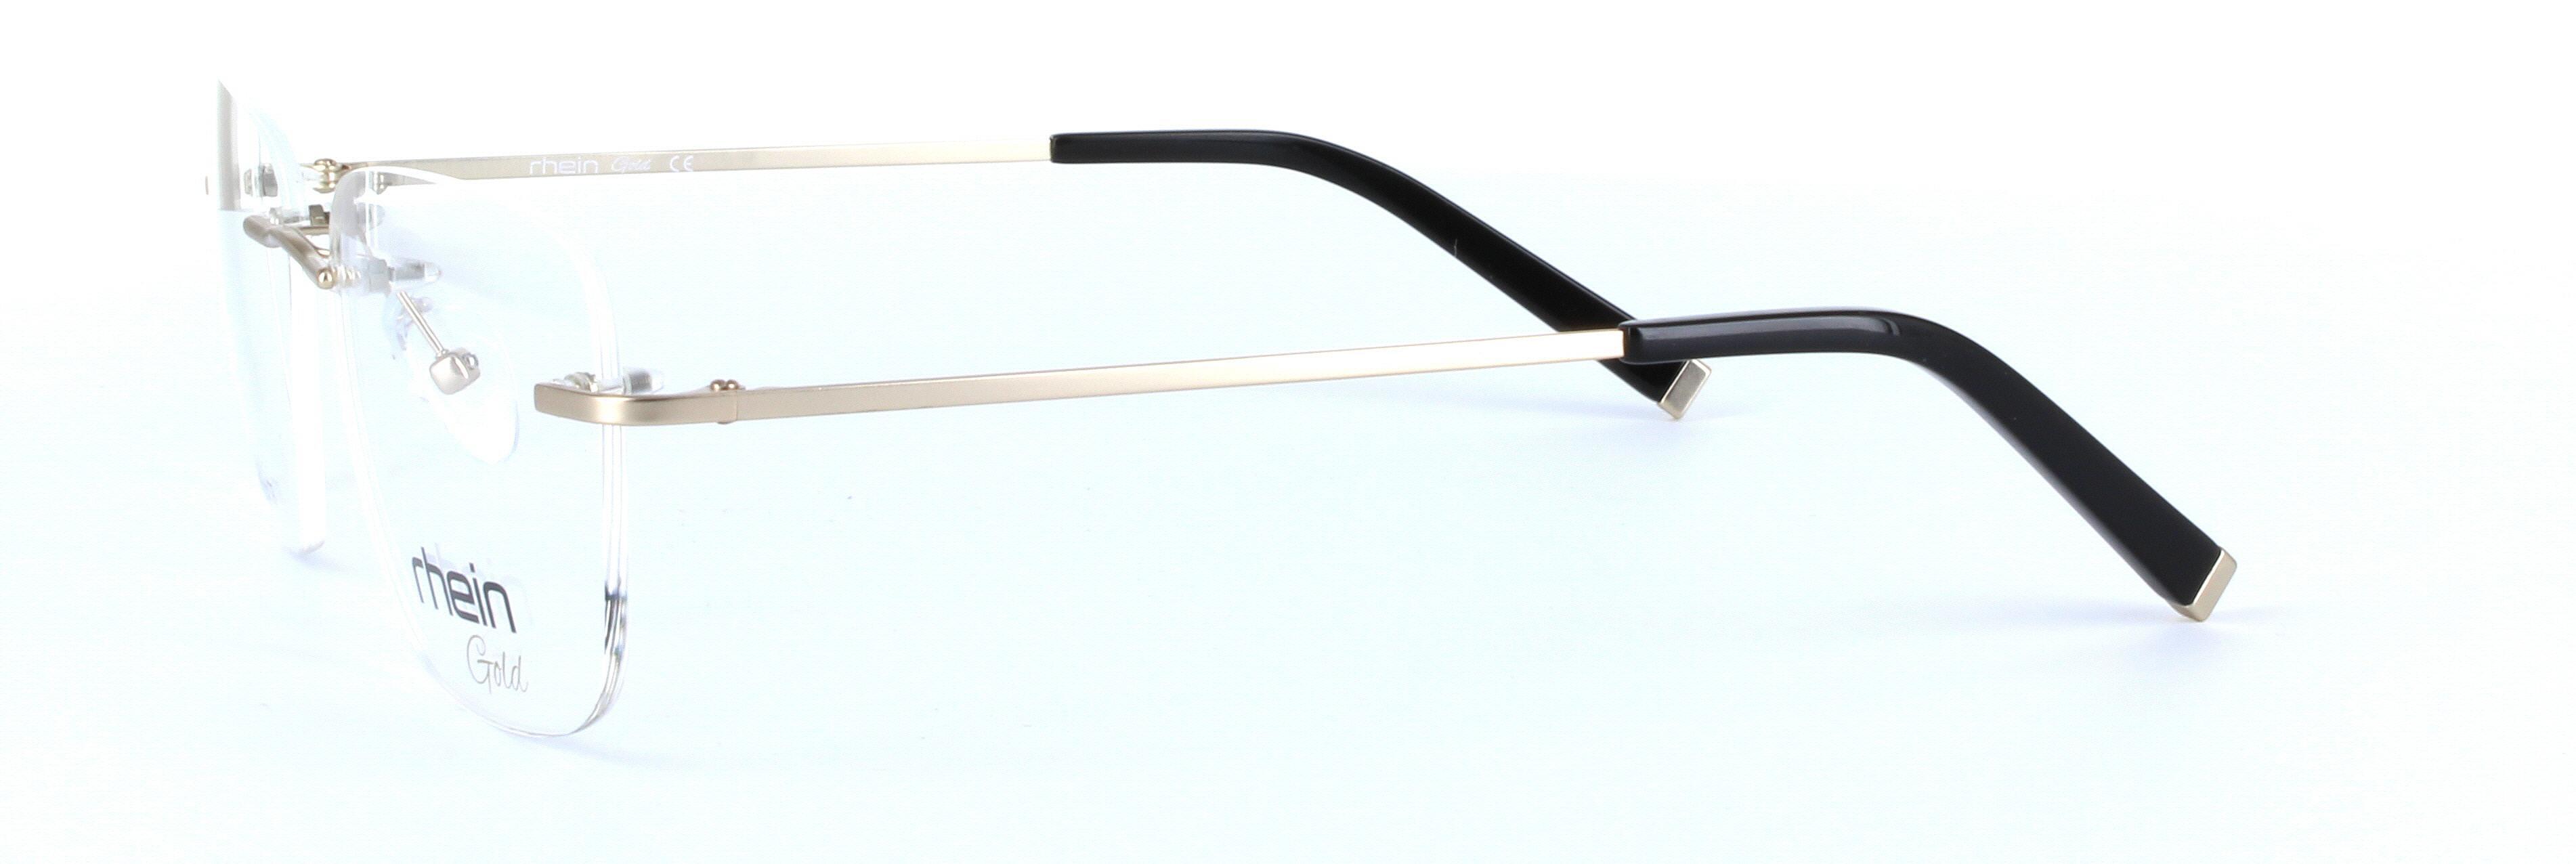 Chandler Titanium Matt Gold Rimless Rectangular Titanium Glasses - Image View 2